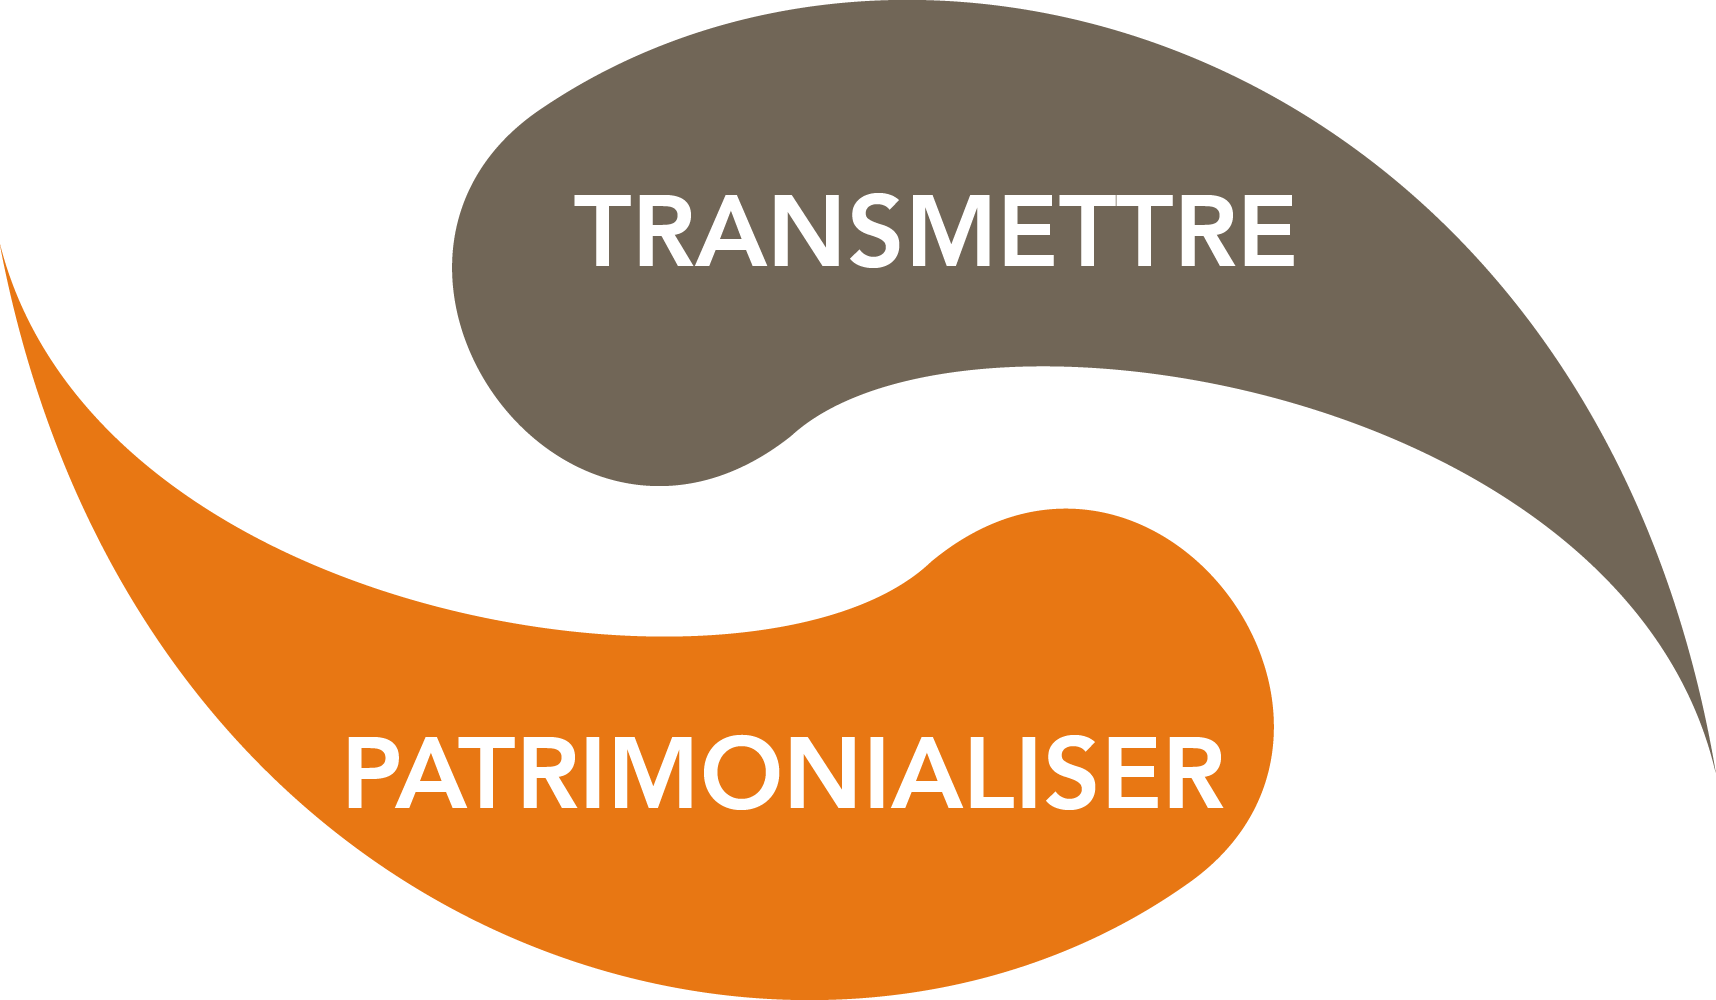 Transmettre / Patrimonialiser